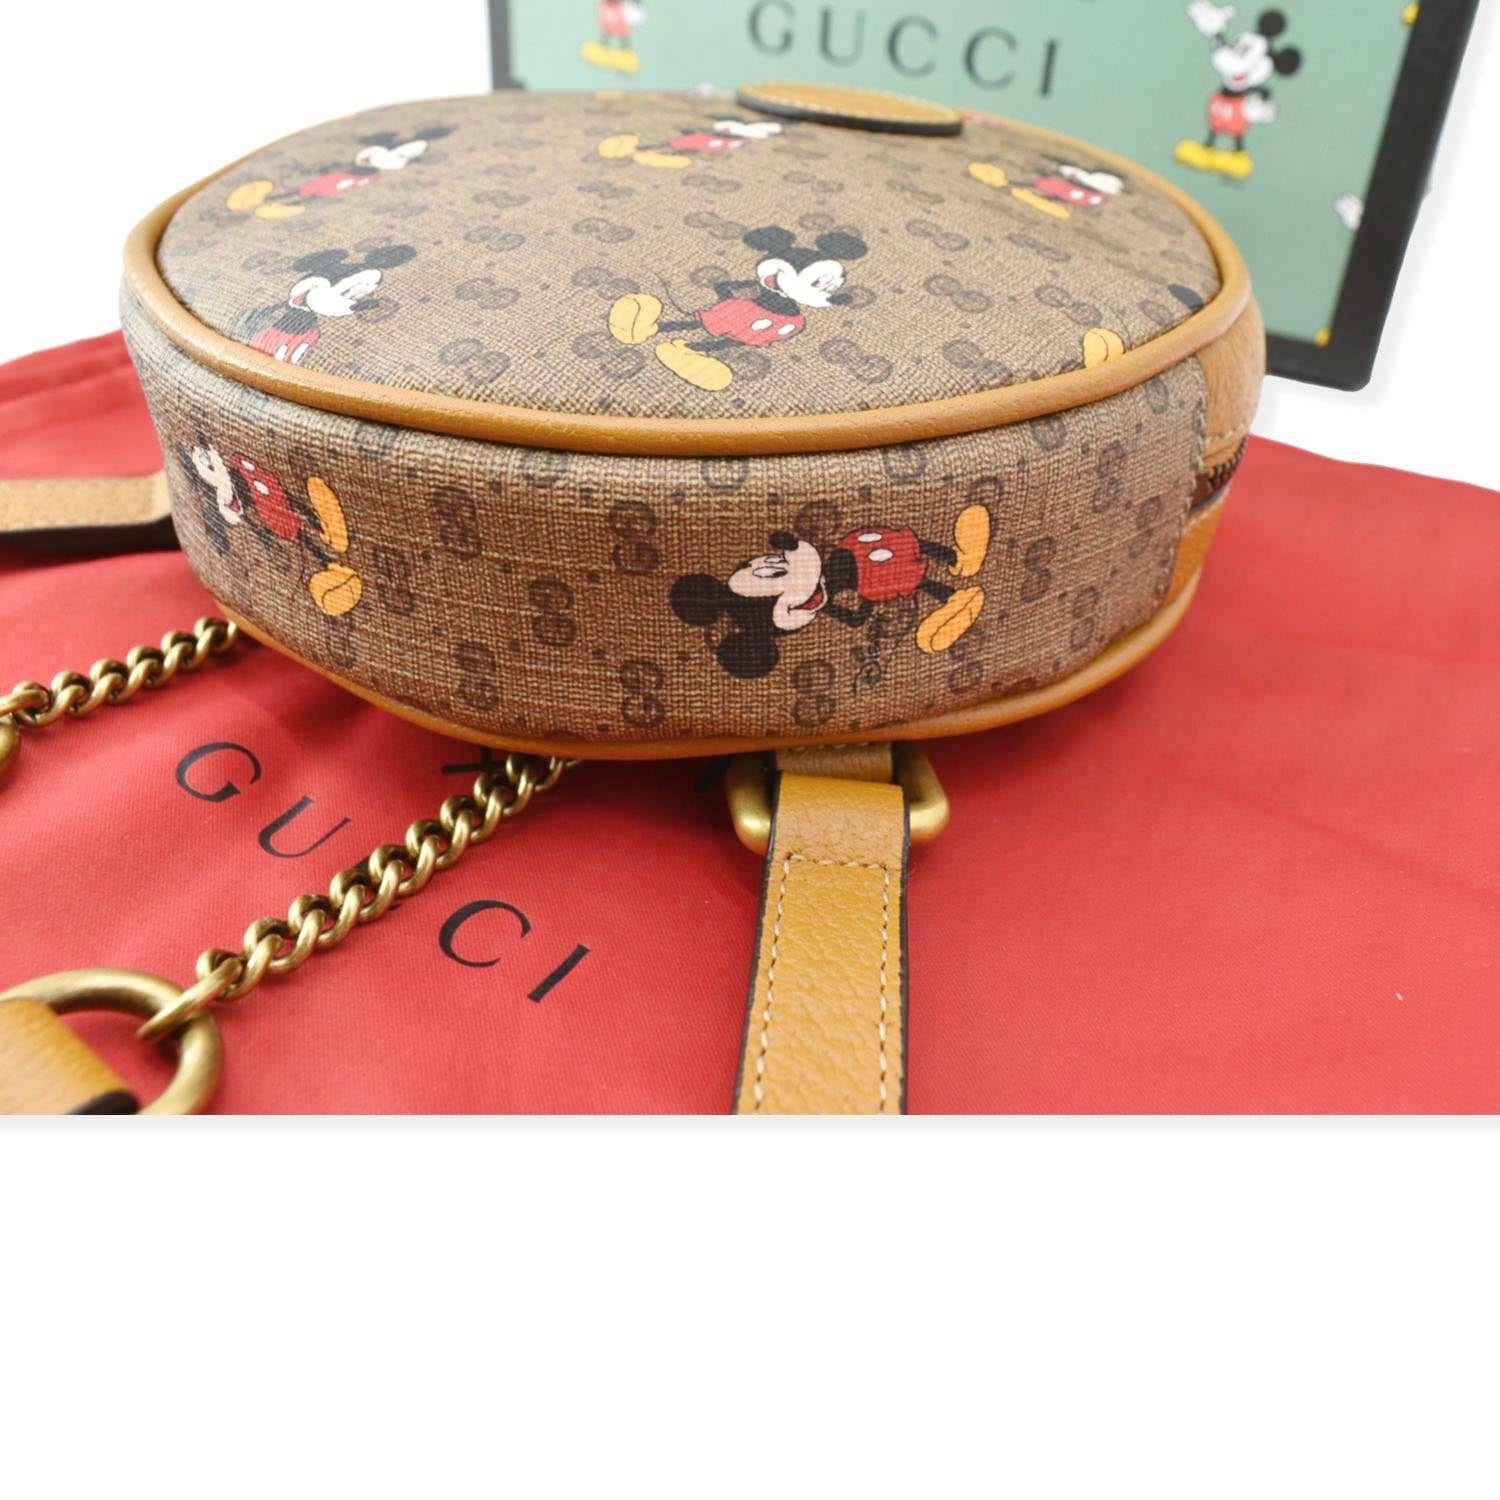 Gucci Disney x Mini GG Supreme Round Backpack Bag Beige